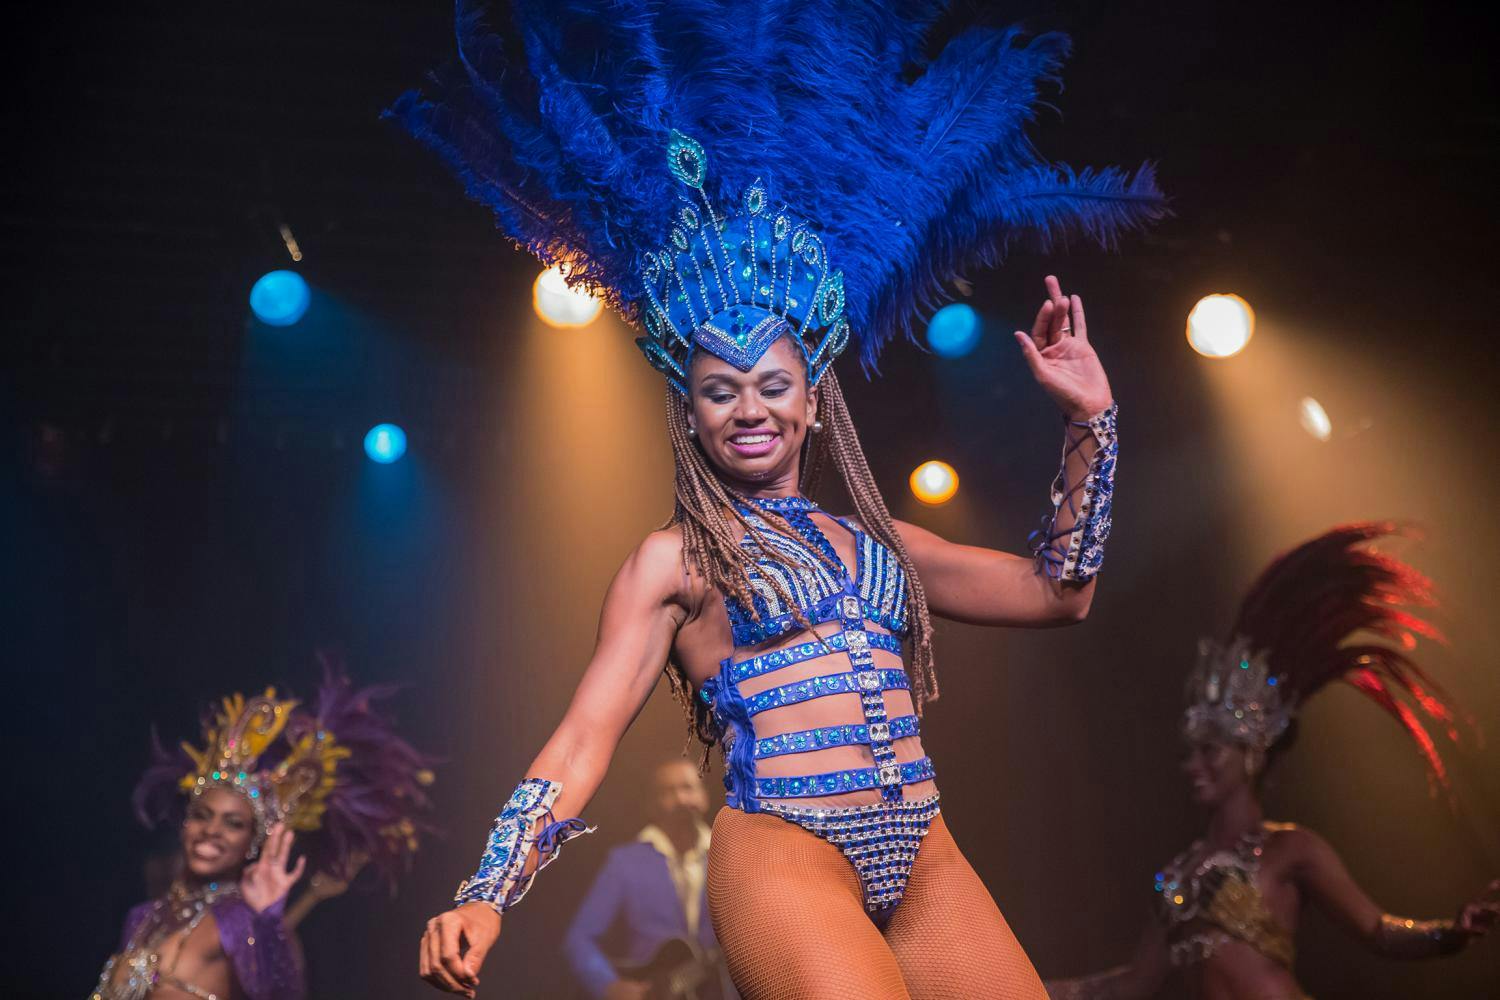 Ginga tropical carnival show Rio de Janeiro Brazil 2.jpg